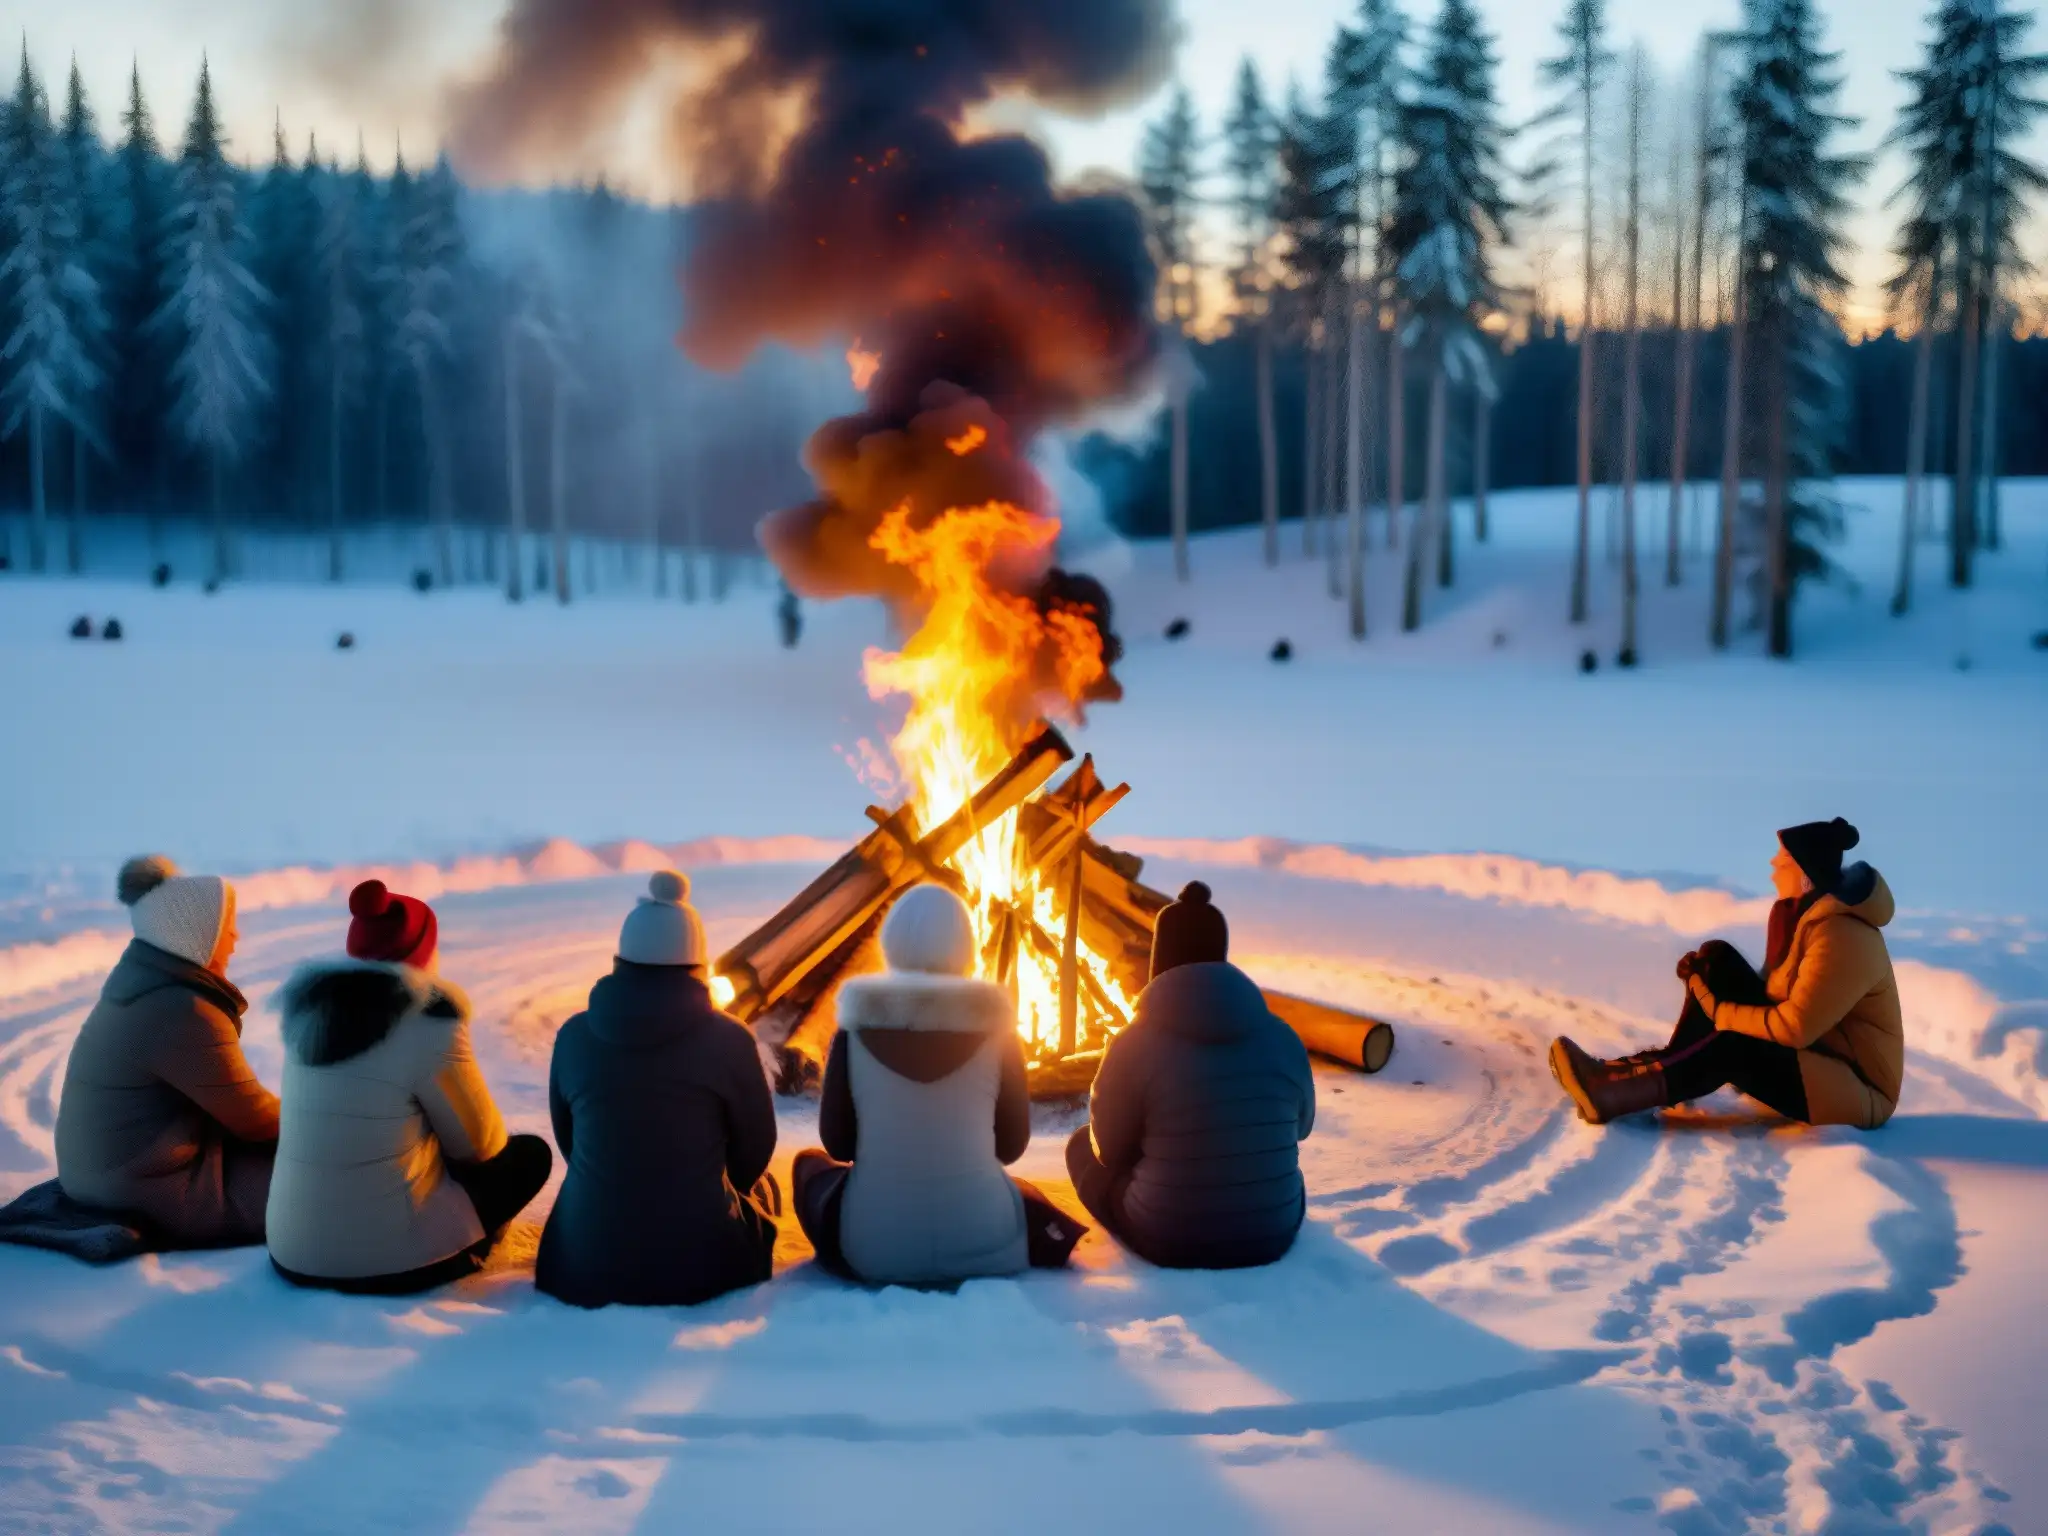 Grupo reunido alrededor de una gran hoguera en el solsticio de invierno, evocando antiguos mitos y leyendas nórdicas